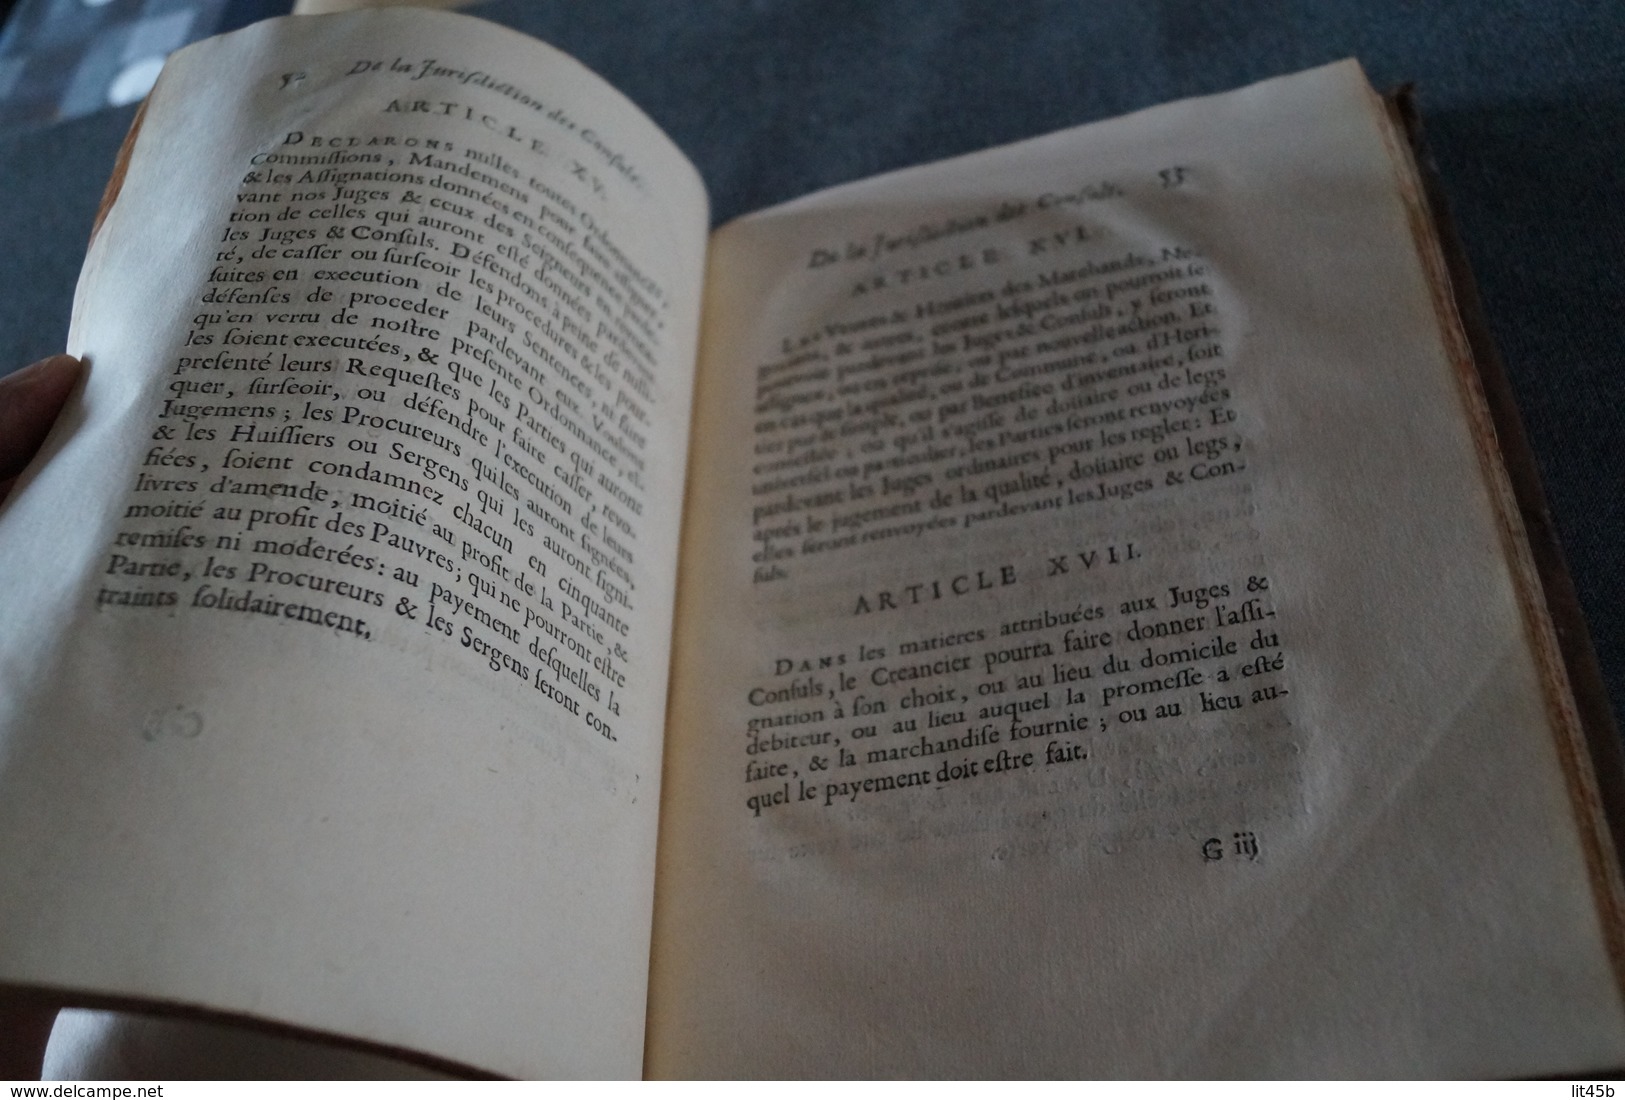 RARE ouvrage de 1673,Ordonnances de Louis XIV avec recueils des Edits du Roy ouvrage complet